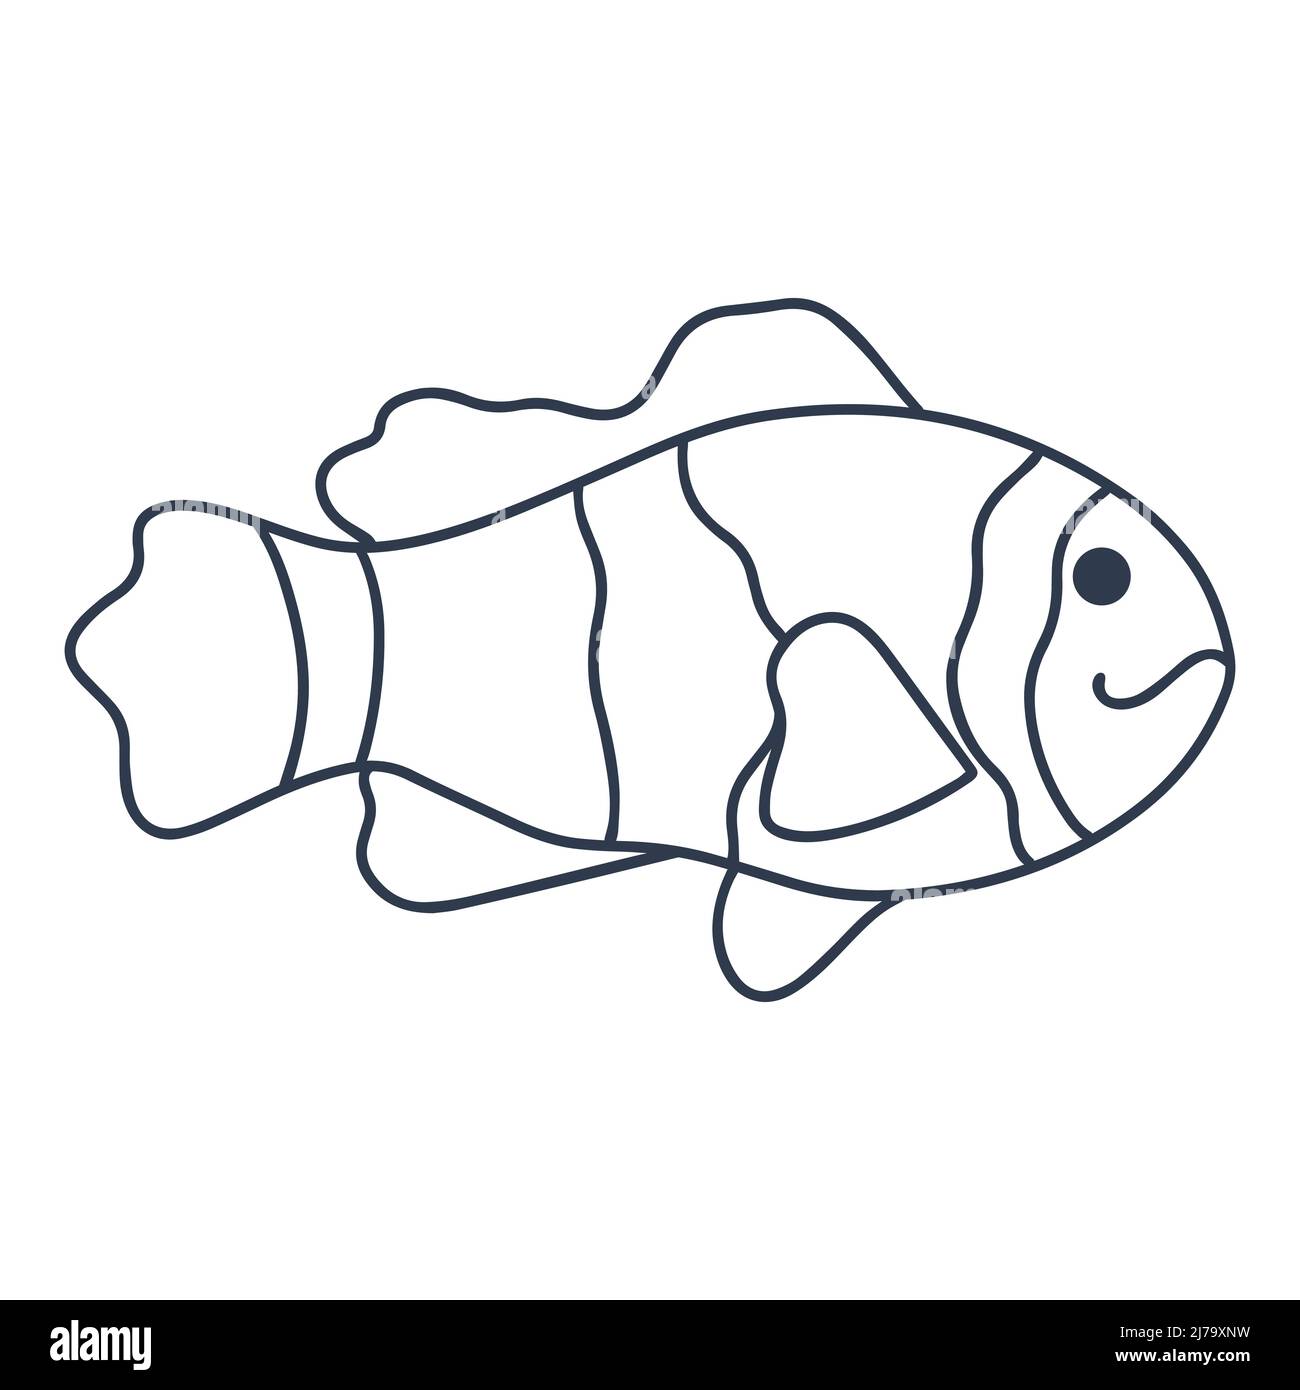 Vektor-Illustration für einzelne Fische im Meer oder Fluss. Isolierte Silhouette der Unterwasserwelt. Schwarz gestreifter Fisch mit schönen Flossen-Doodle-Stil auf weißem Backgro Stock Vektor